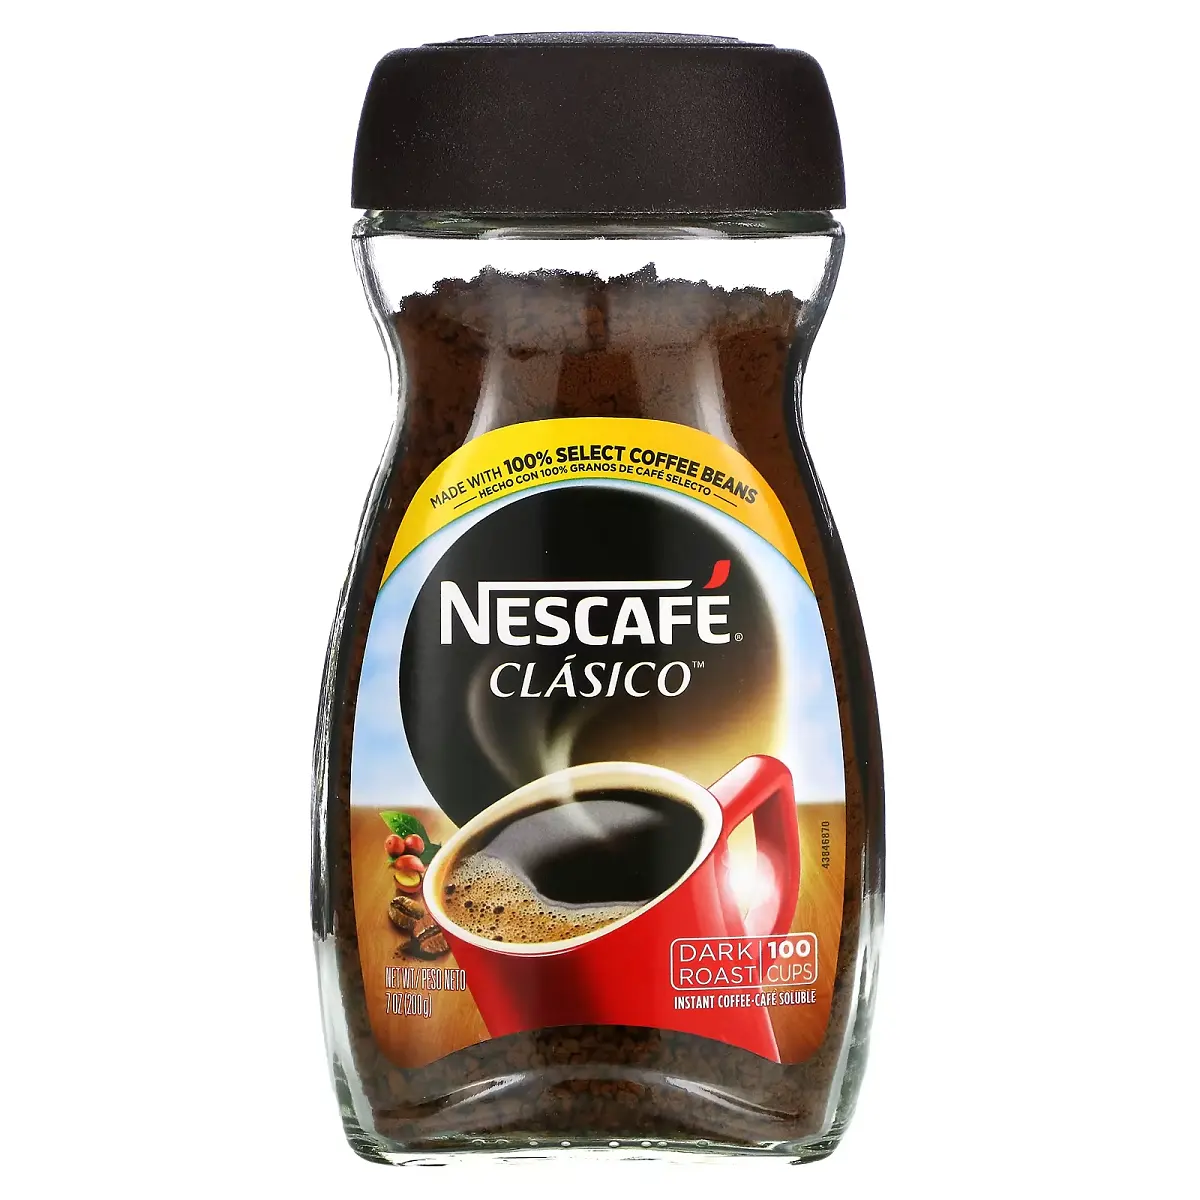 उच्च गुणवत्ता वाली नेस्कैफ क्लासिक / शुद्ध इंस्टेंट नेस्कैफ कॉफी सस्ती कीमत पर जर्मनी से निर्माता दुनिया भर में निर्यात करती है